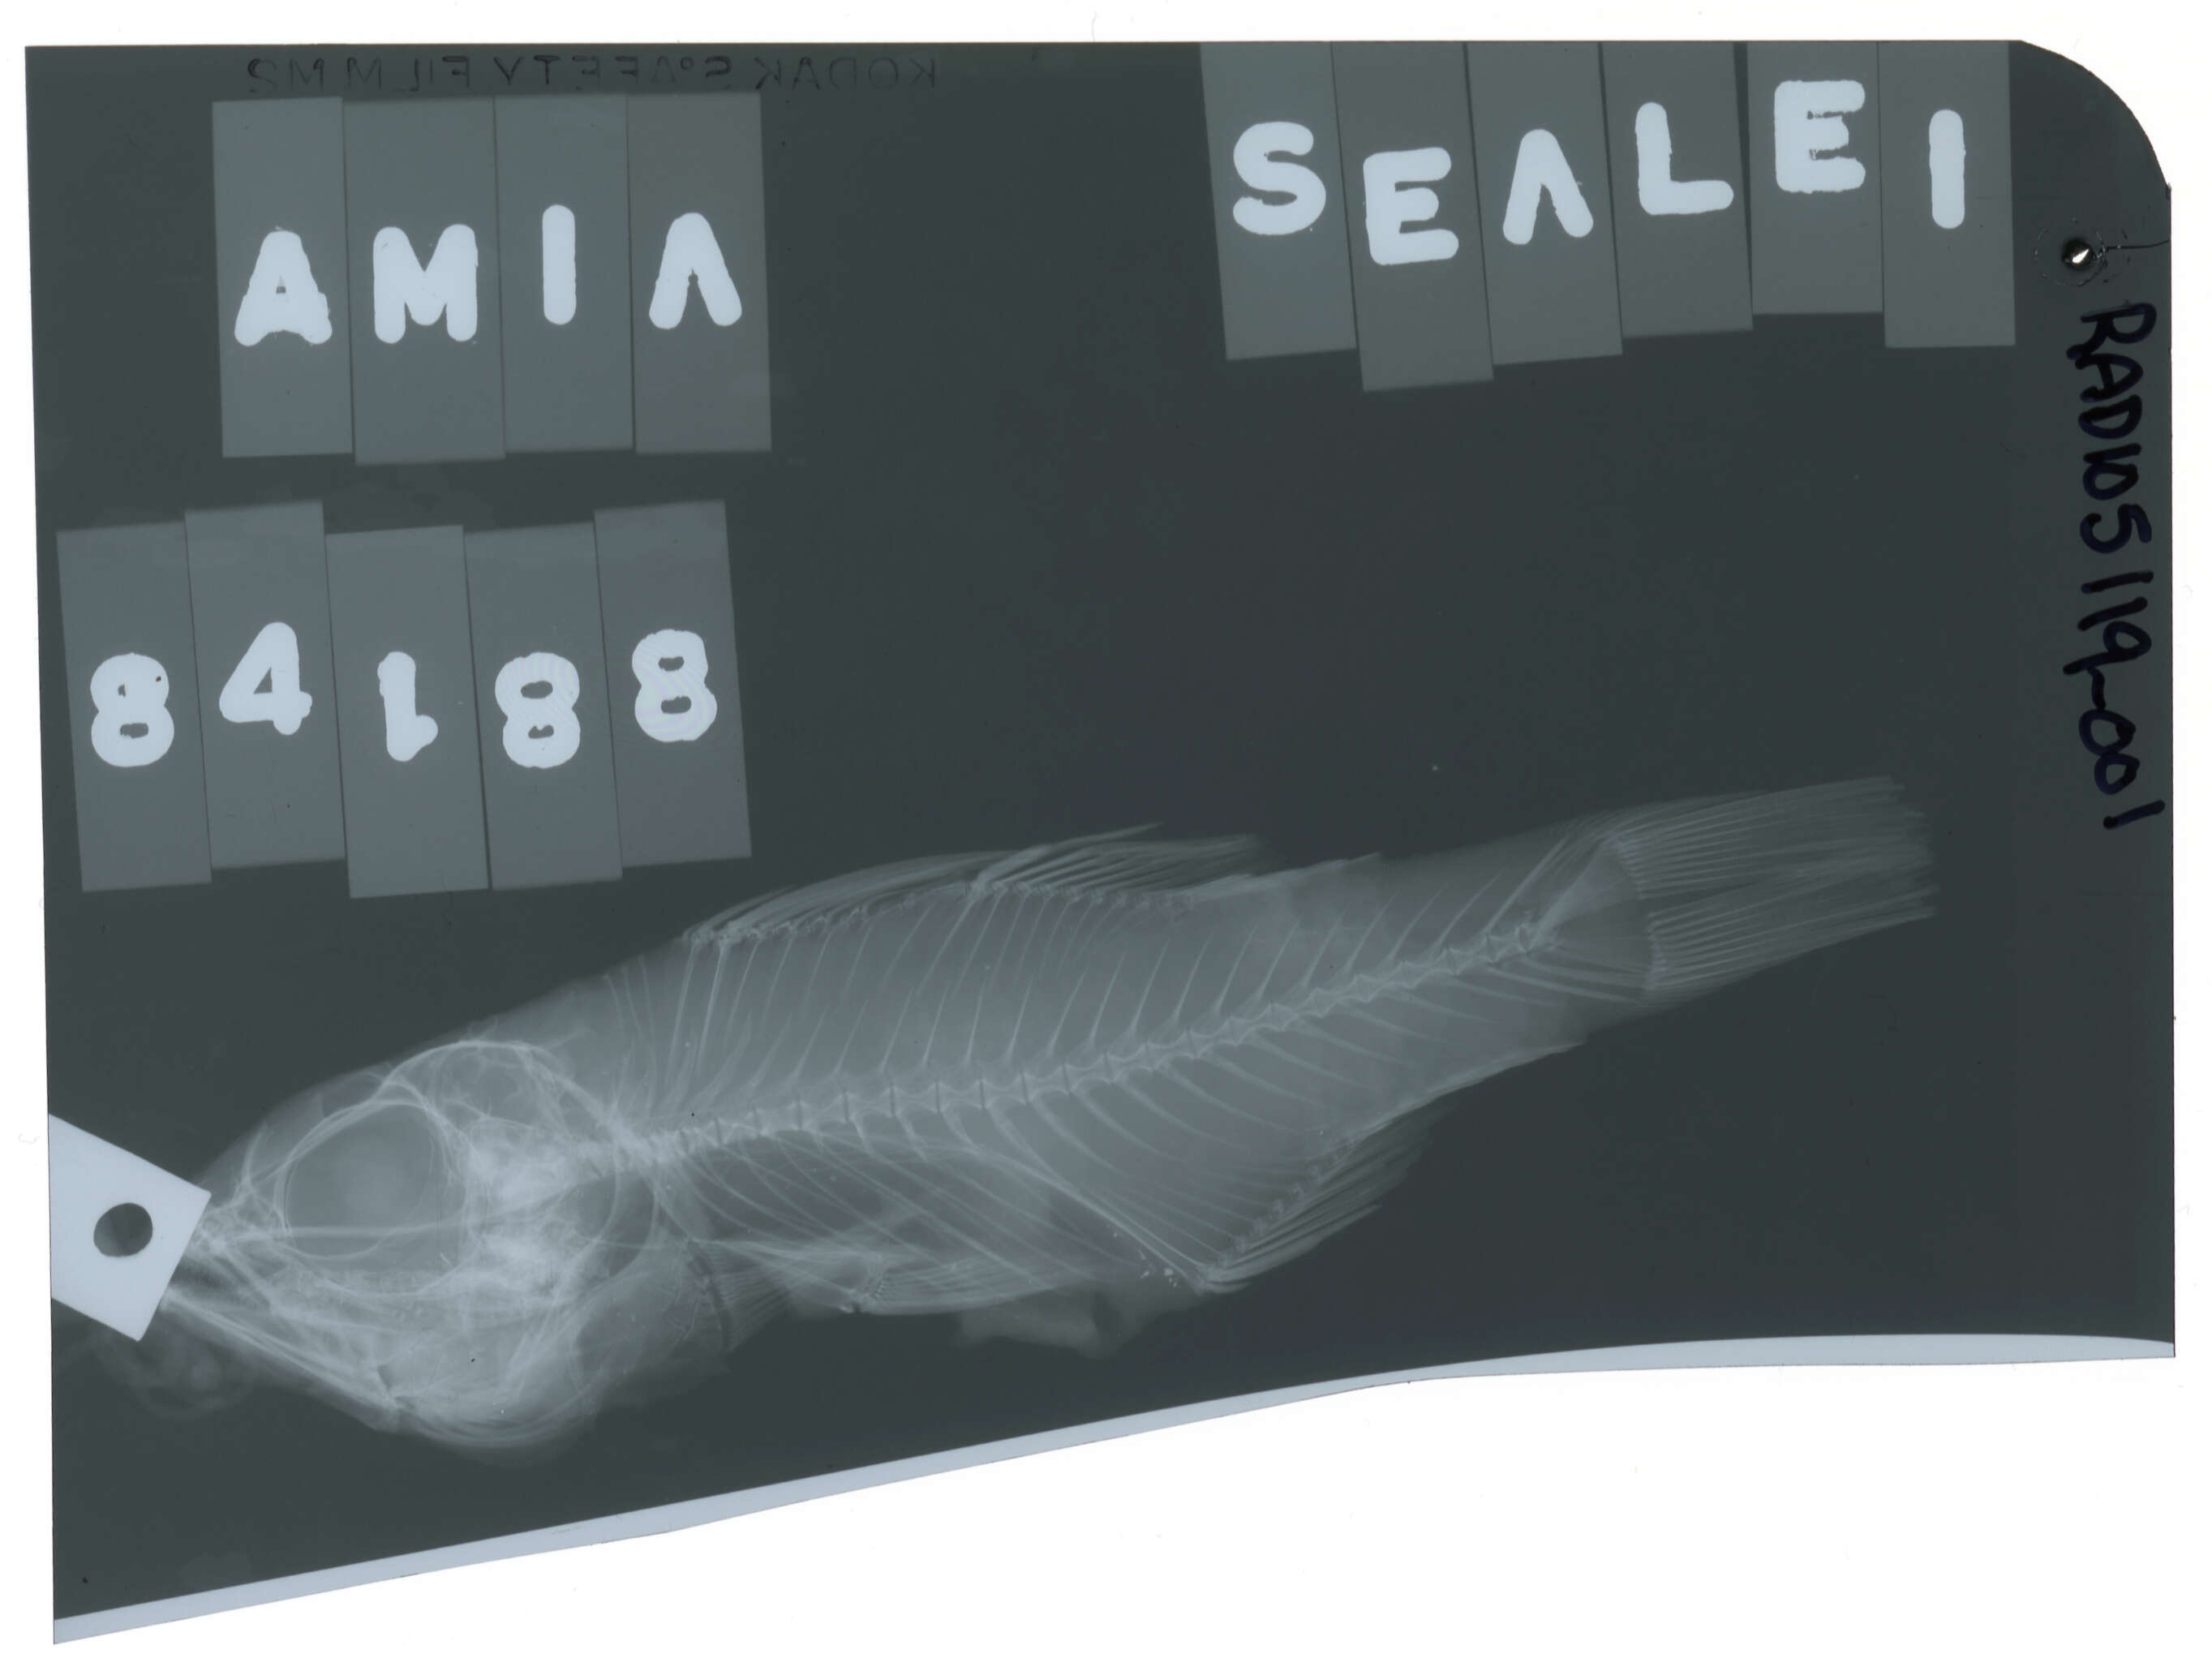 Image of Seale's cardinalfish